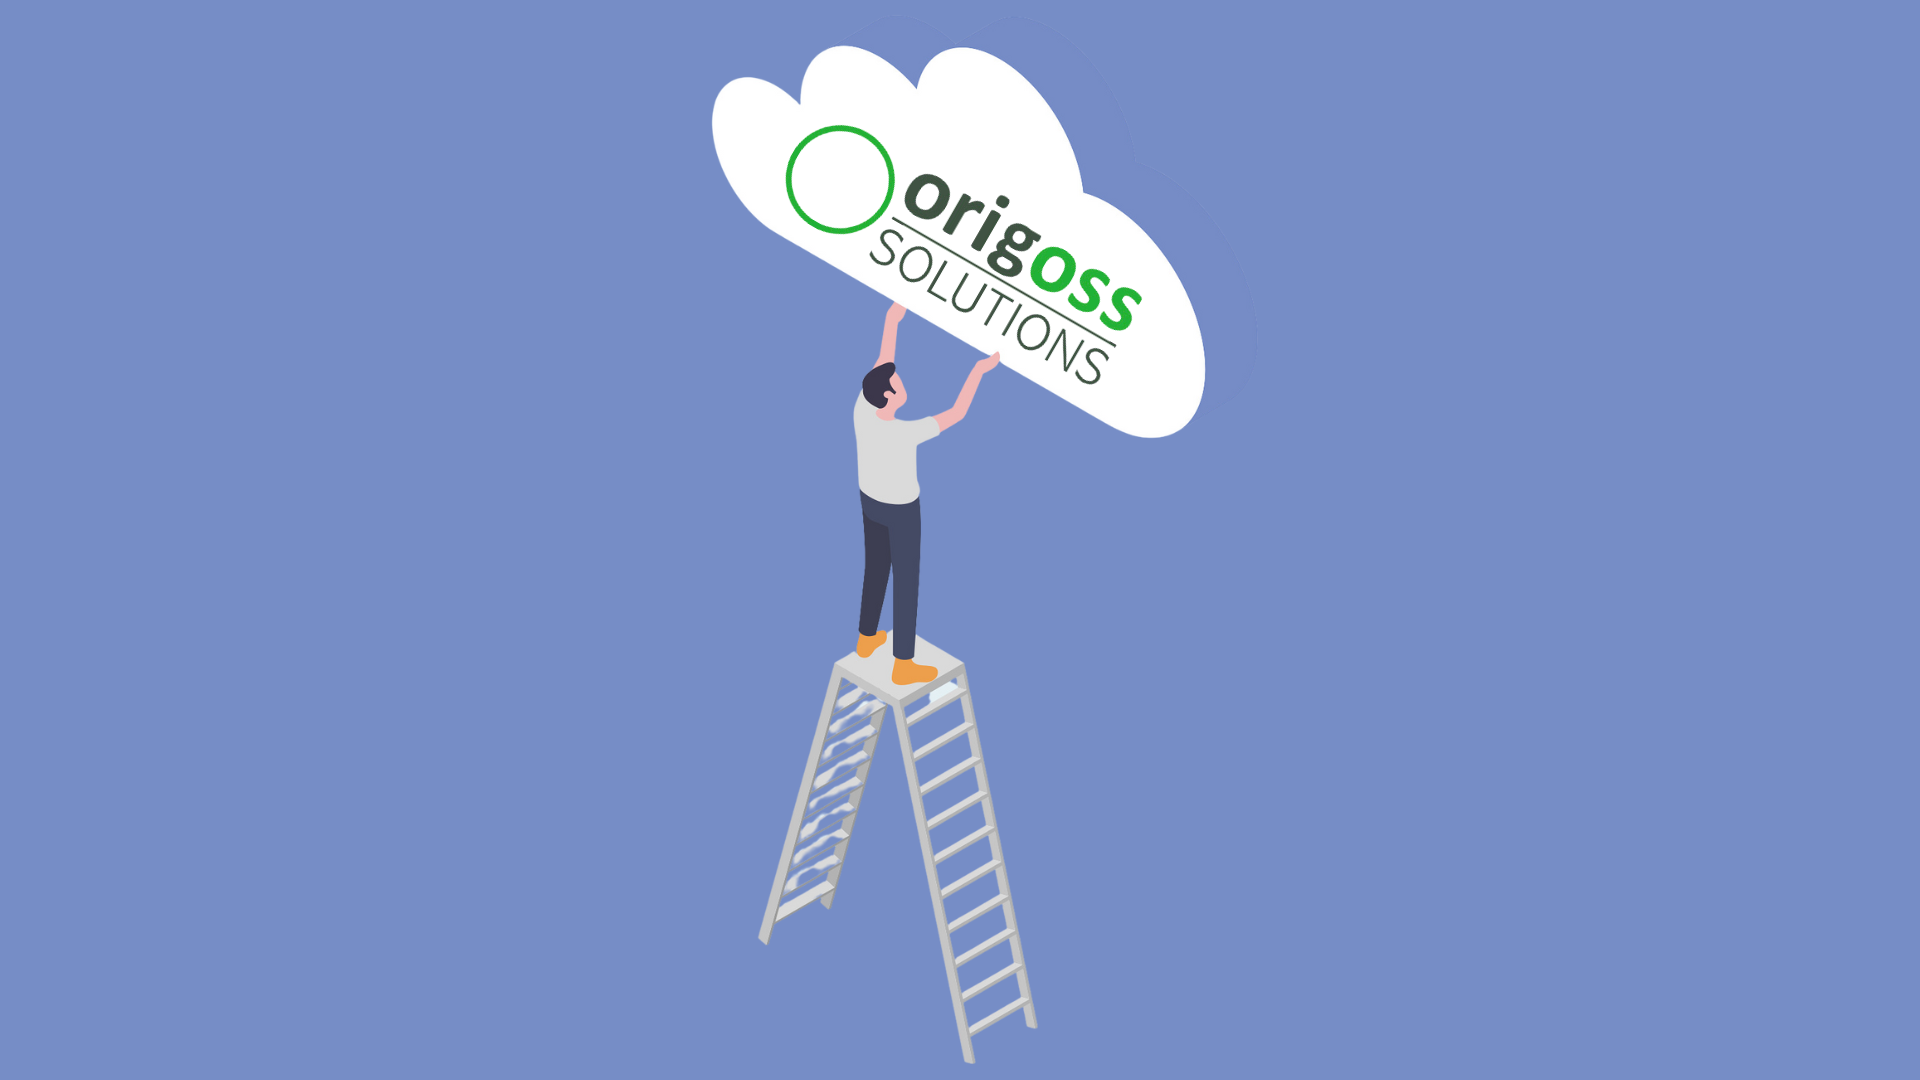 Origoss Solutions Partner